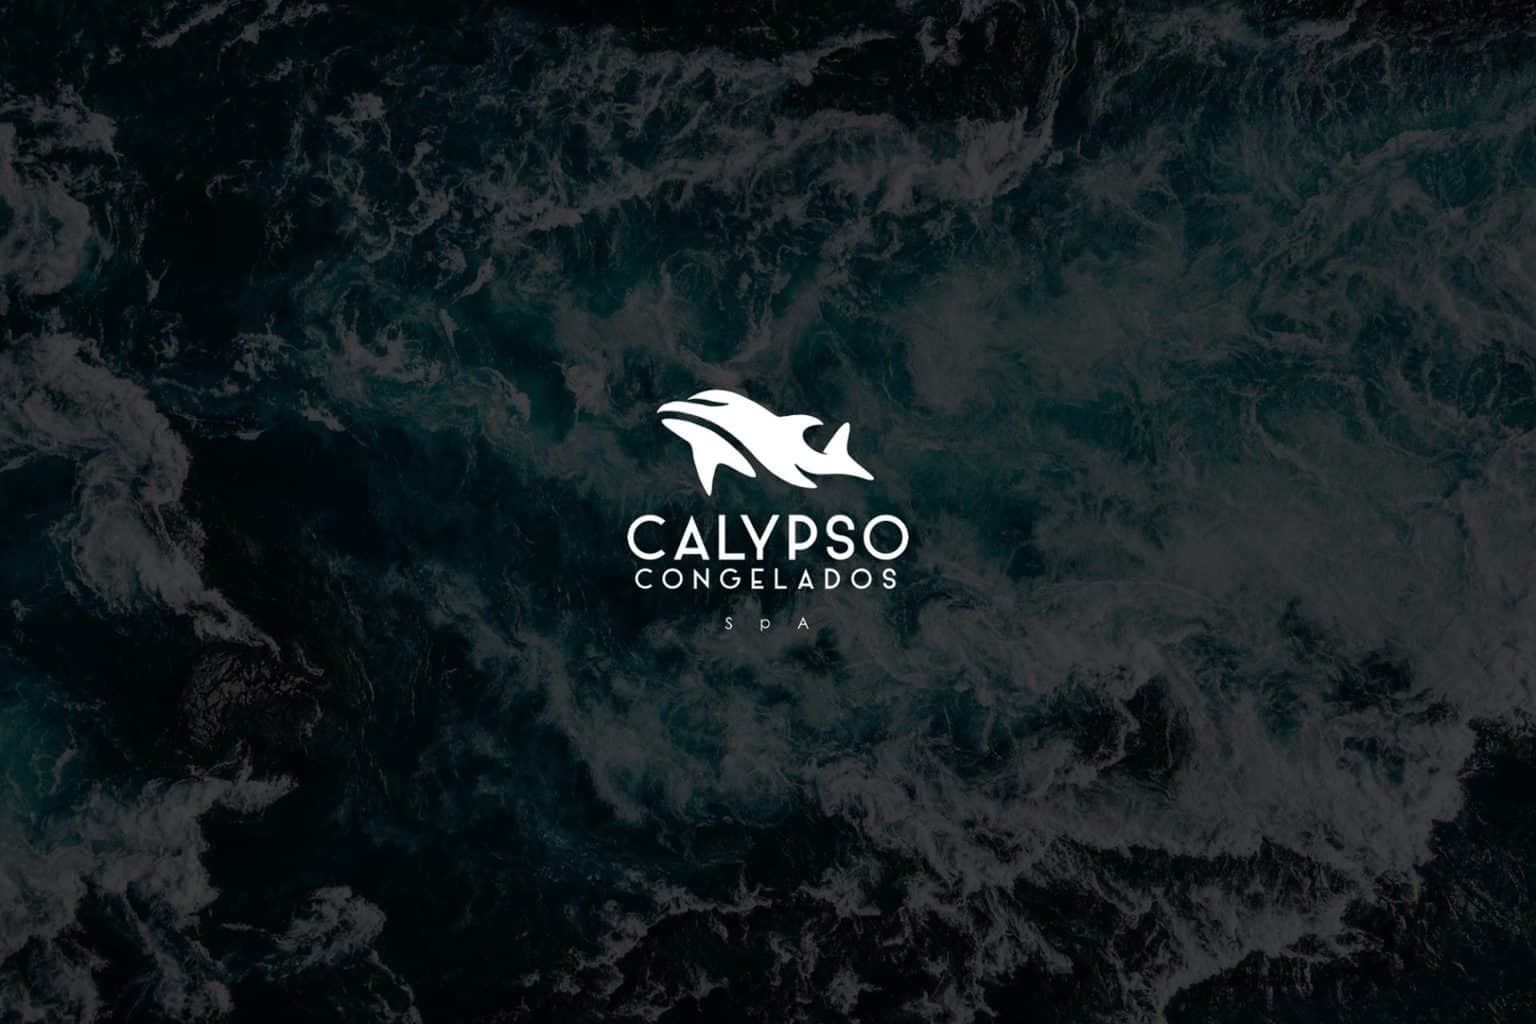 Calypso Congelados